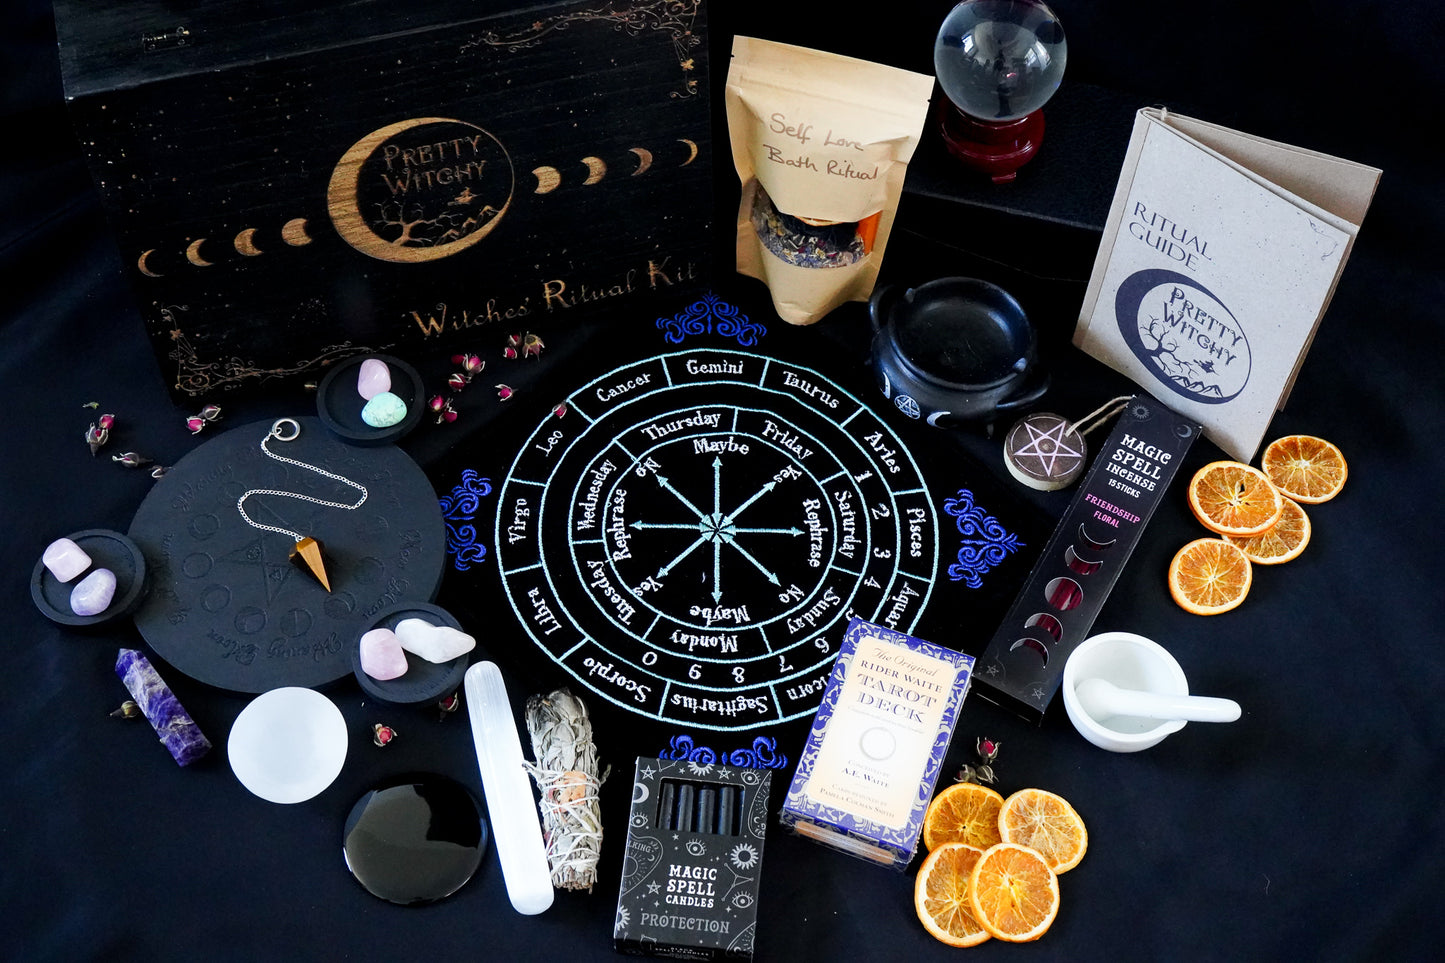 Witch Altar Kit